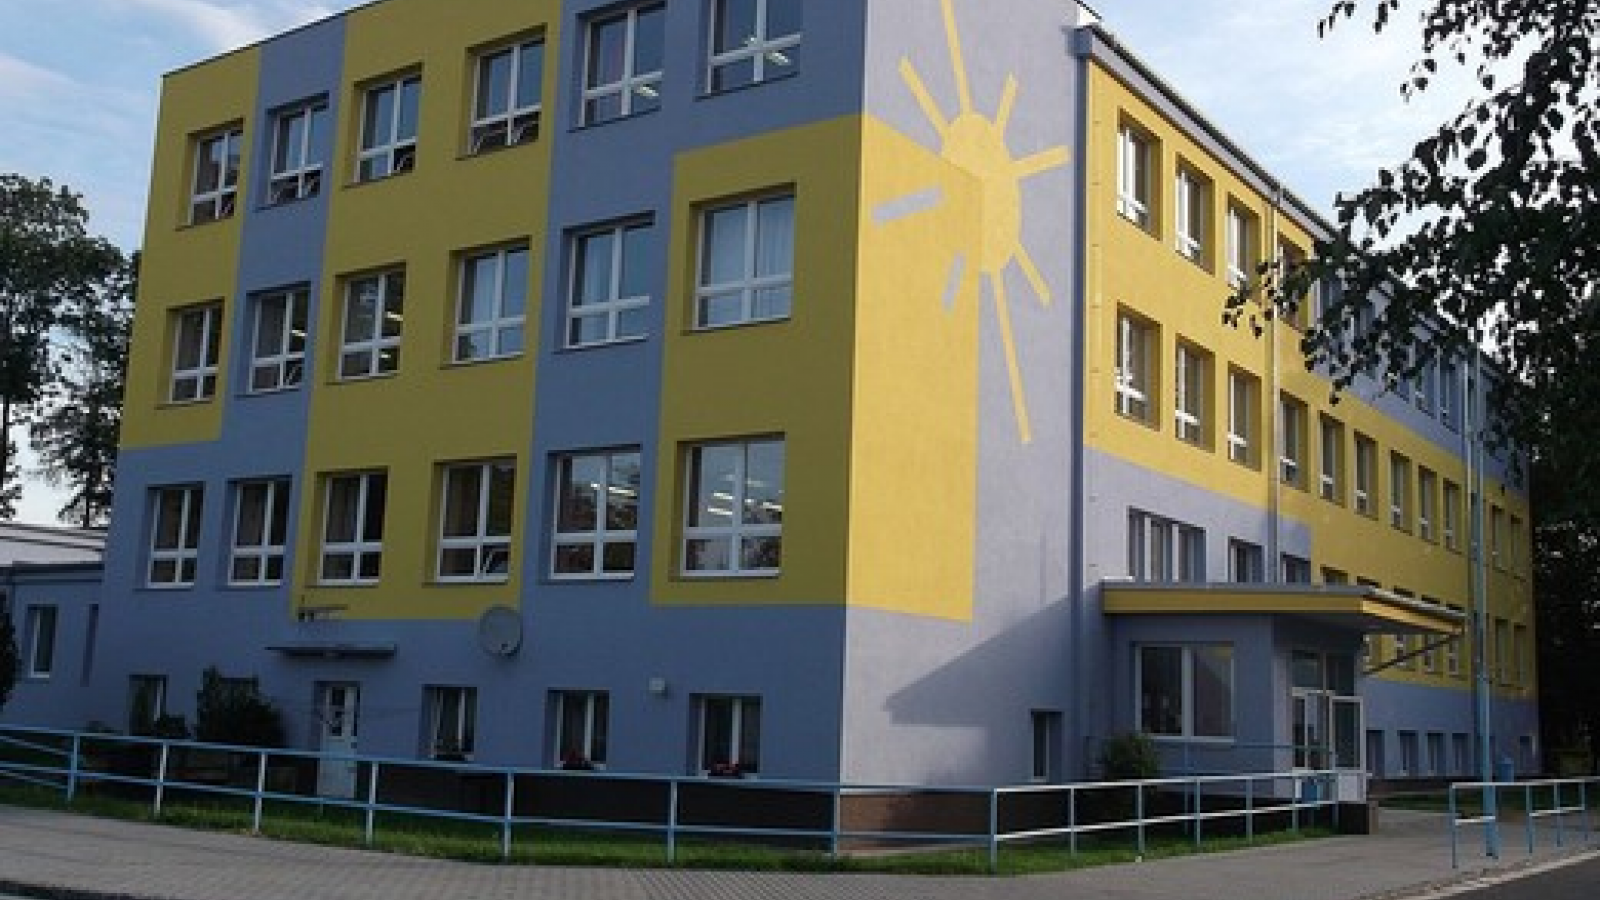 Základní škola Dašice, okres Pardubice